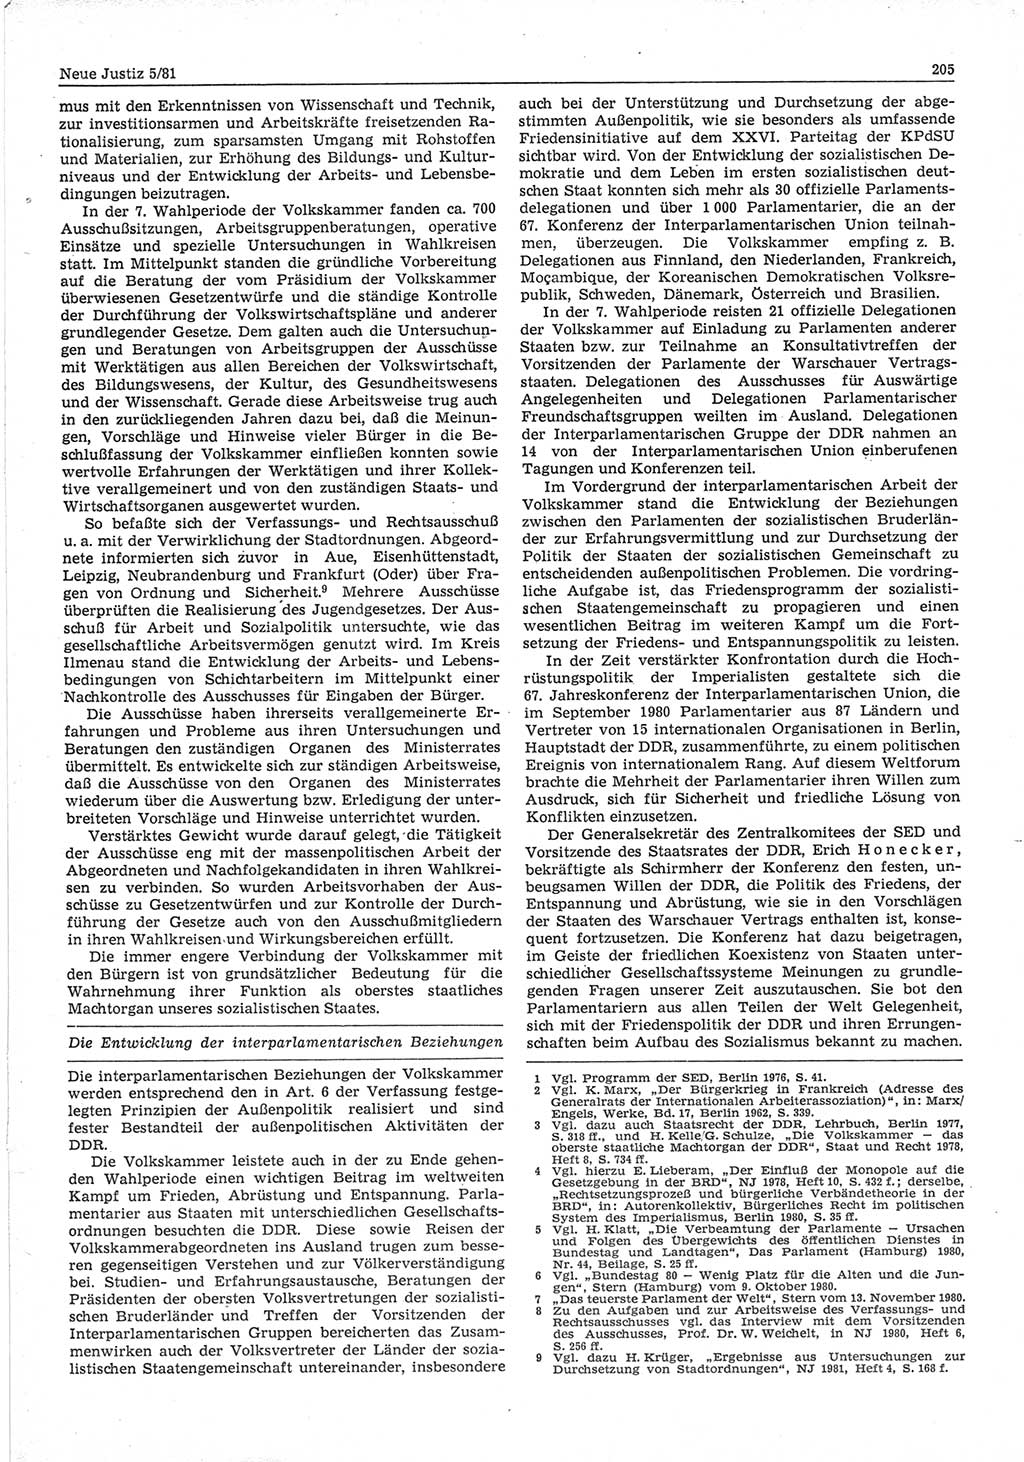 Neue Justiz (NJ), Zeitschrift für sozialistisches Recht und Gesetzlichkeit [Deutsche Demokratische Republik (DDR)], 35. Jahrgang 1981, Seite 205 (NJ DDR 1981, S. 205)